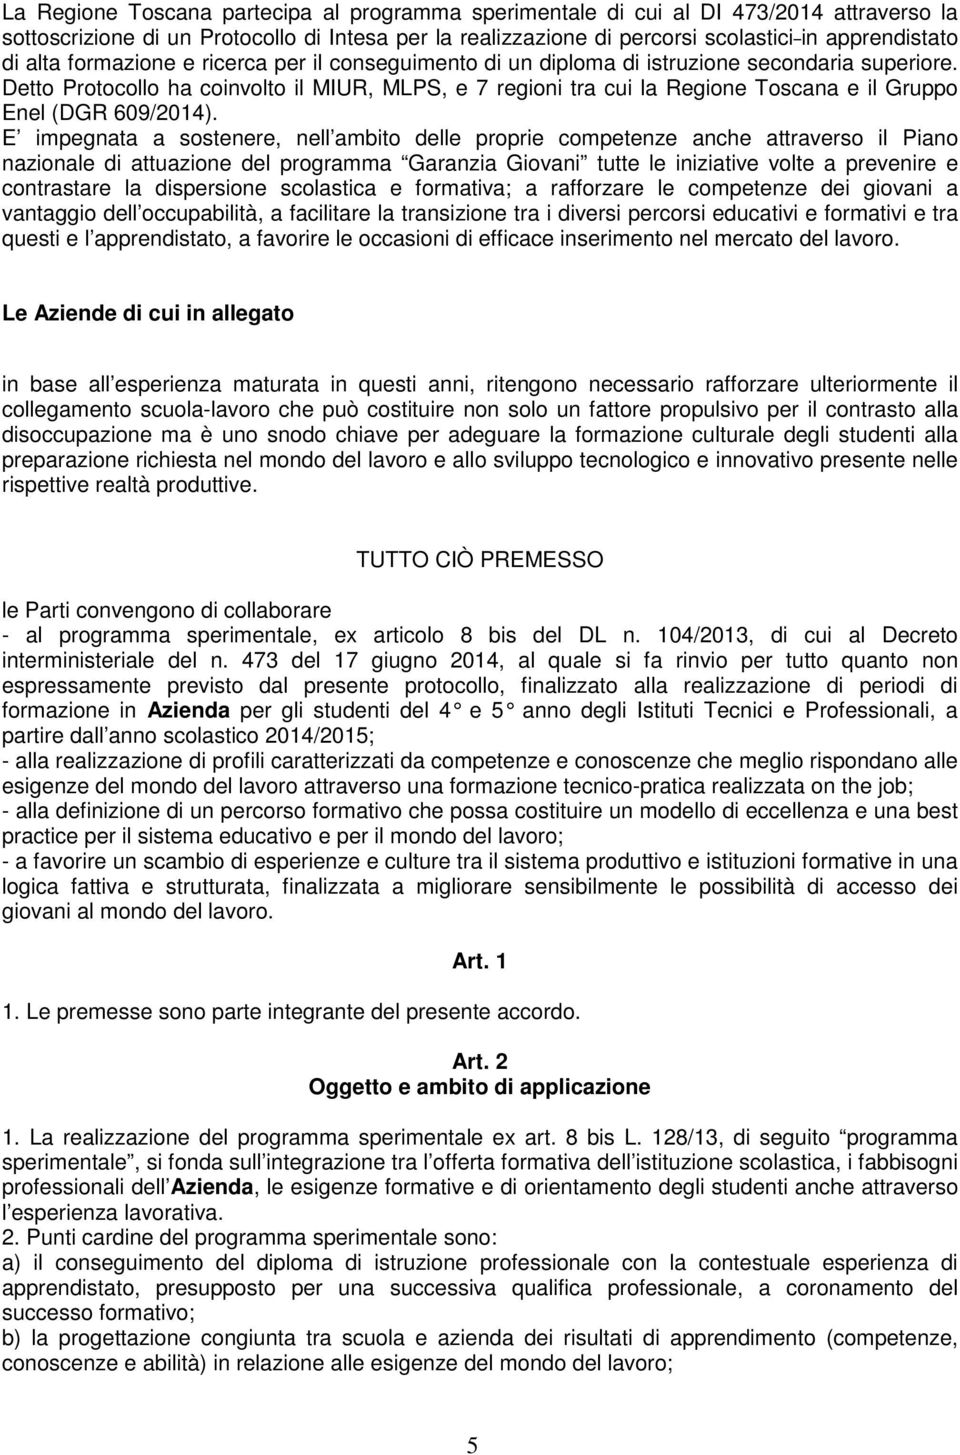 Detto Protocollo ha coinvolto il MIUR, MLPS, e 7 regioni tra cui la Regione Toscana e il Gruppo Enel (DGR 609/2014).